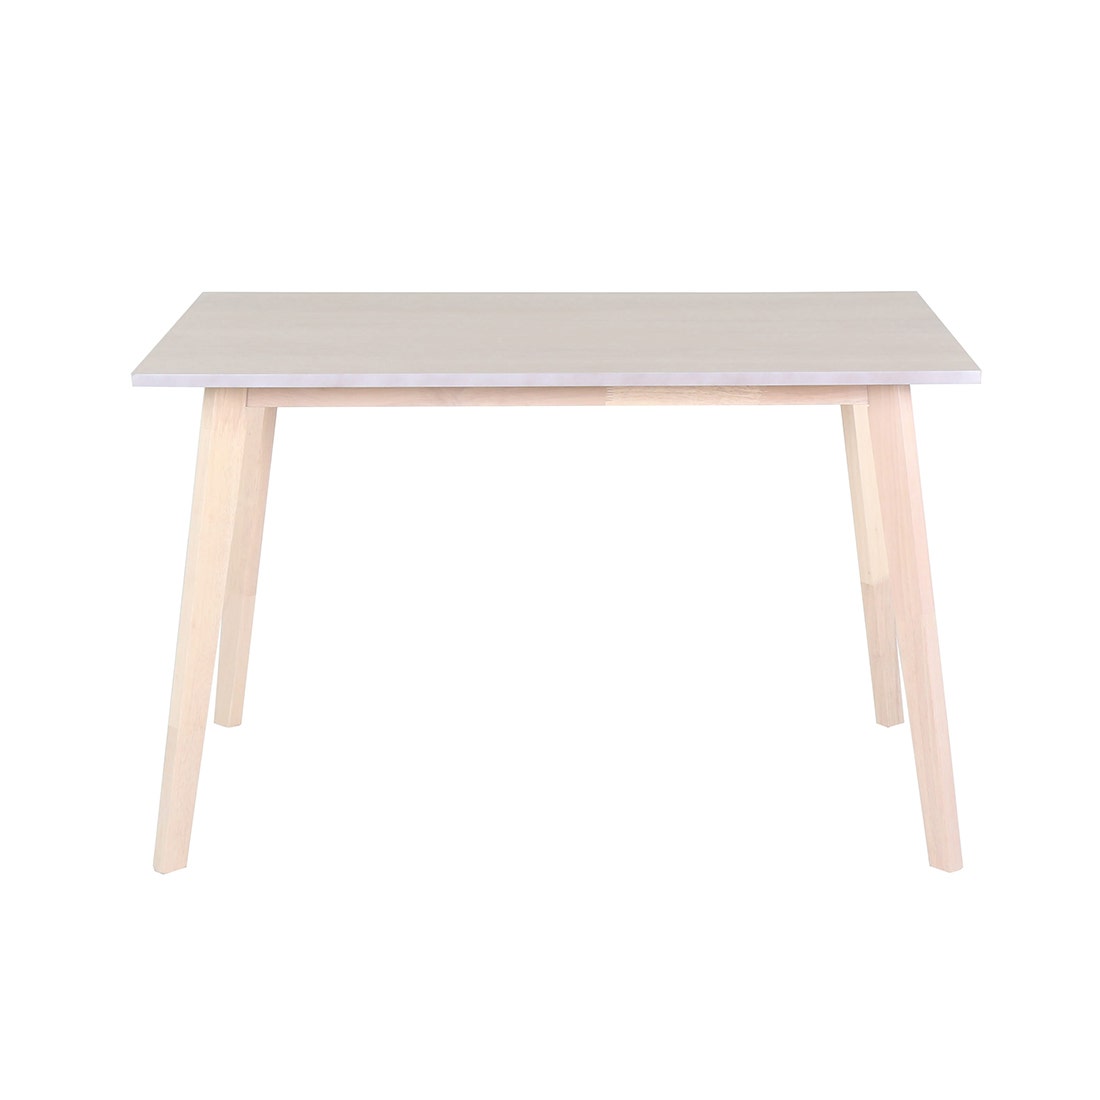 โต๊ะทานอาหาร โต๊ะอาหารไม้ล้วน รุ่น Wediya สีสีขาว-SB Design Square